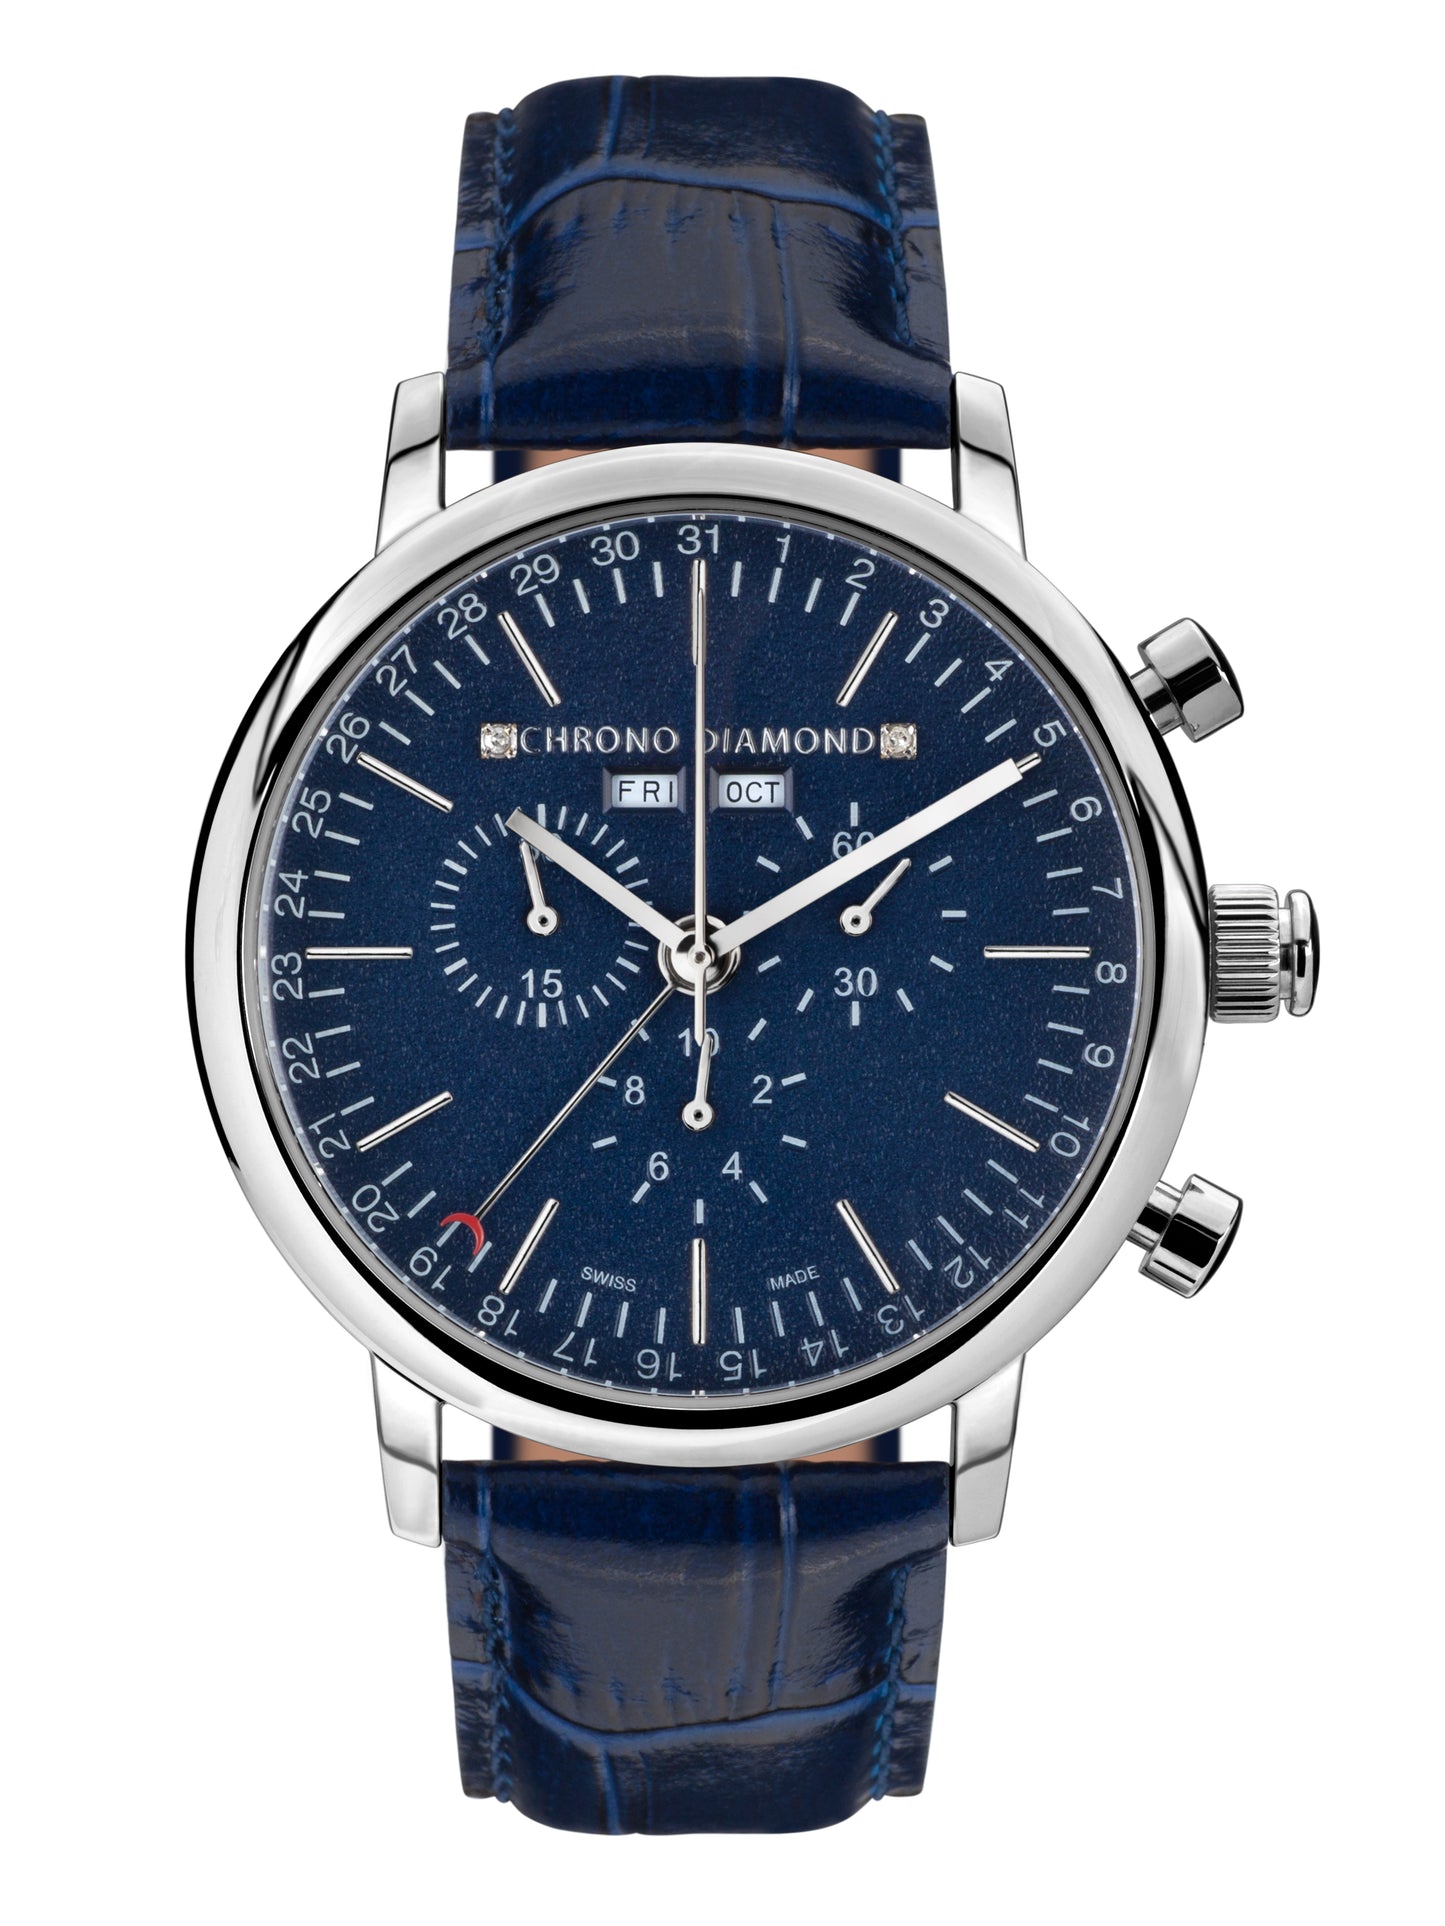 Automatic watches — Argos — Chrono Diamond — steel blue